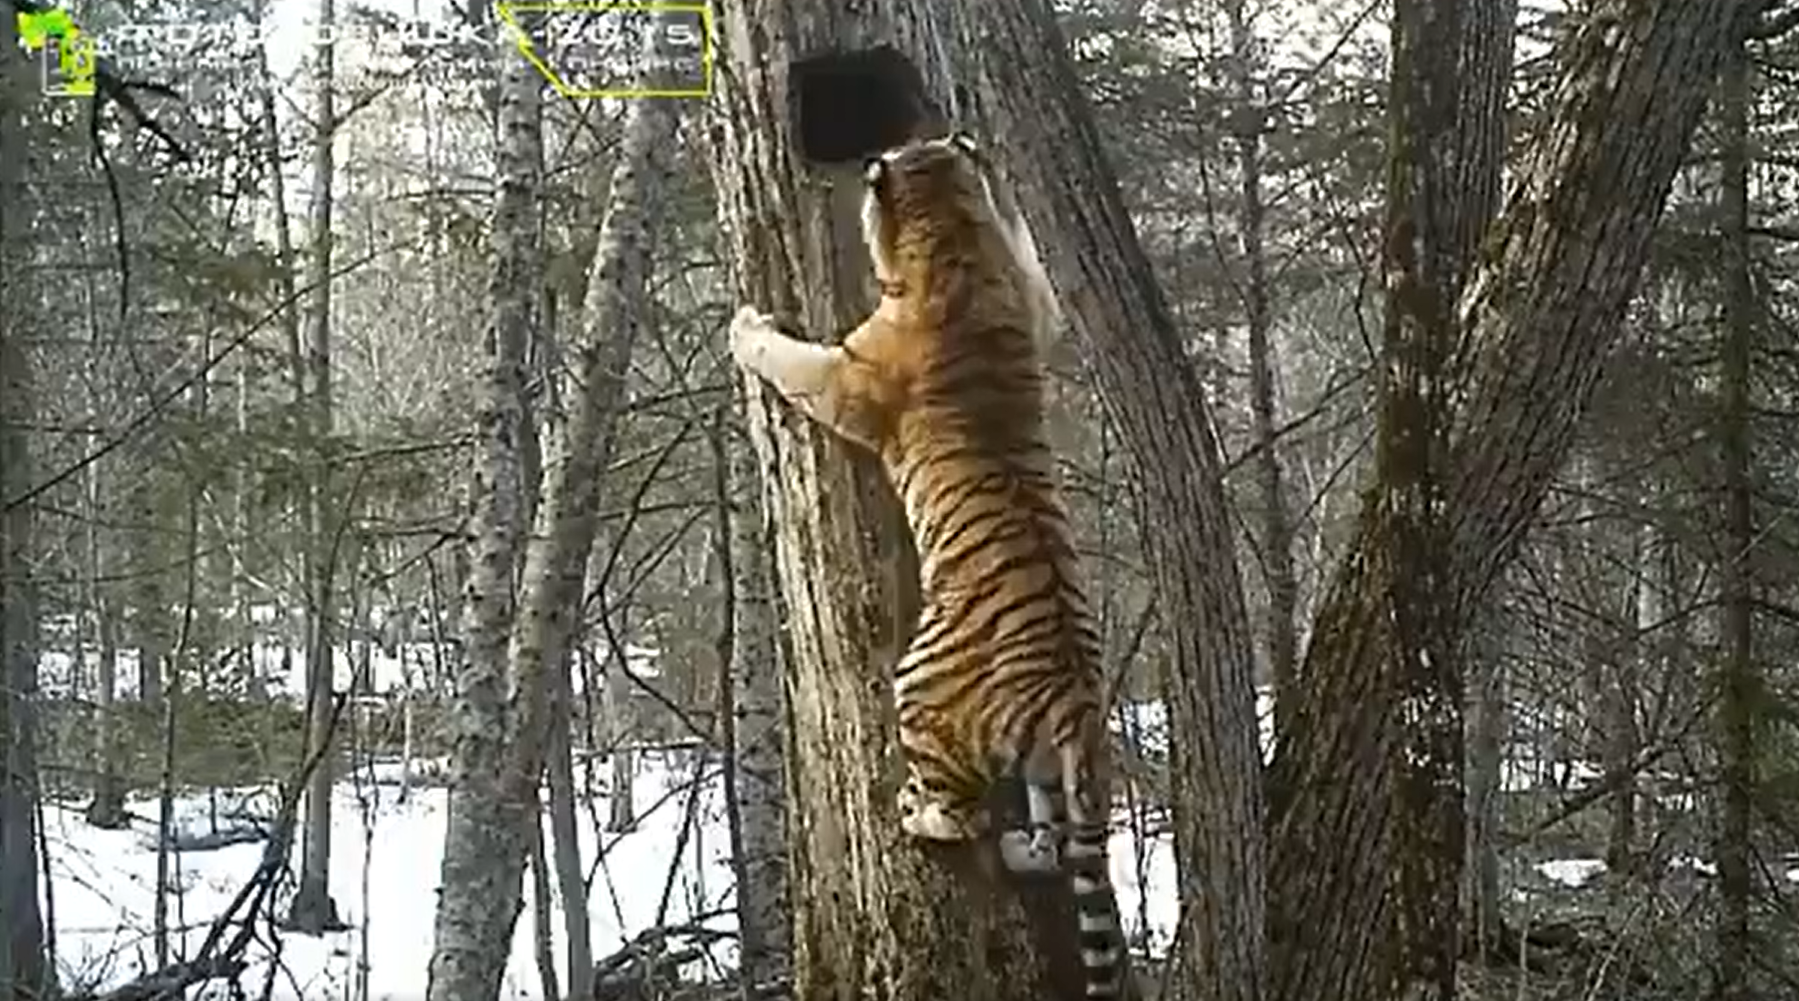 Hogy mászik fel a kiváncsi tigris a fára?